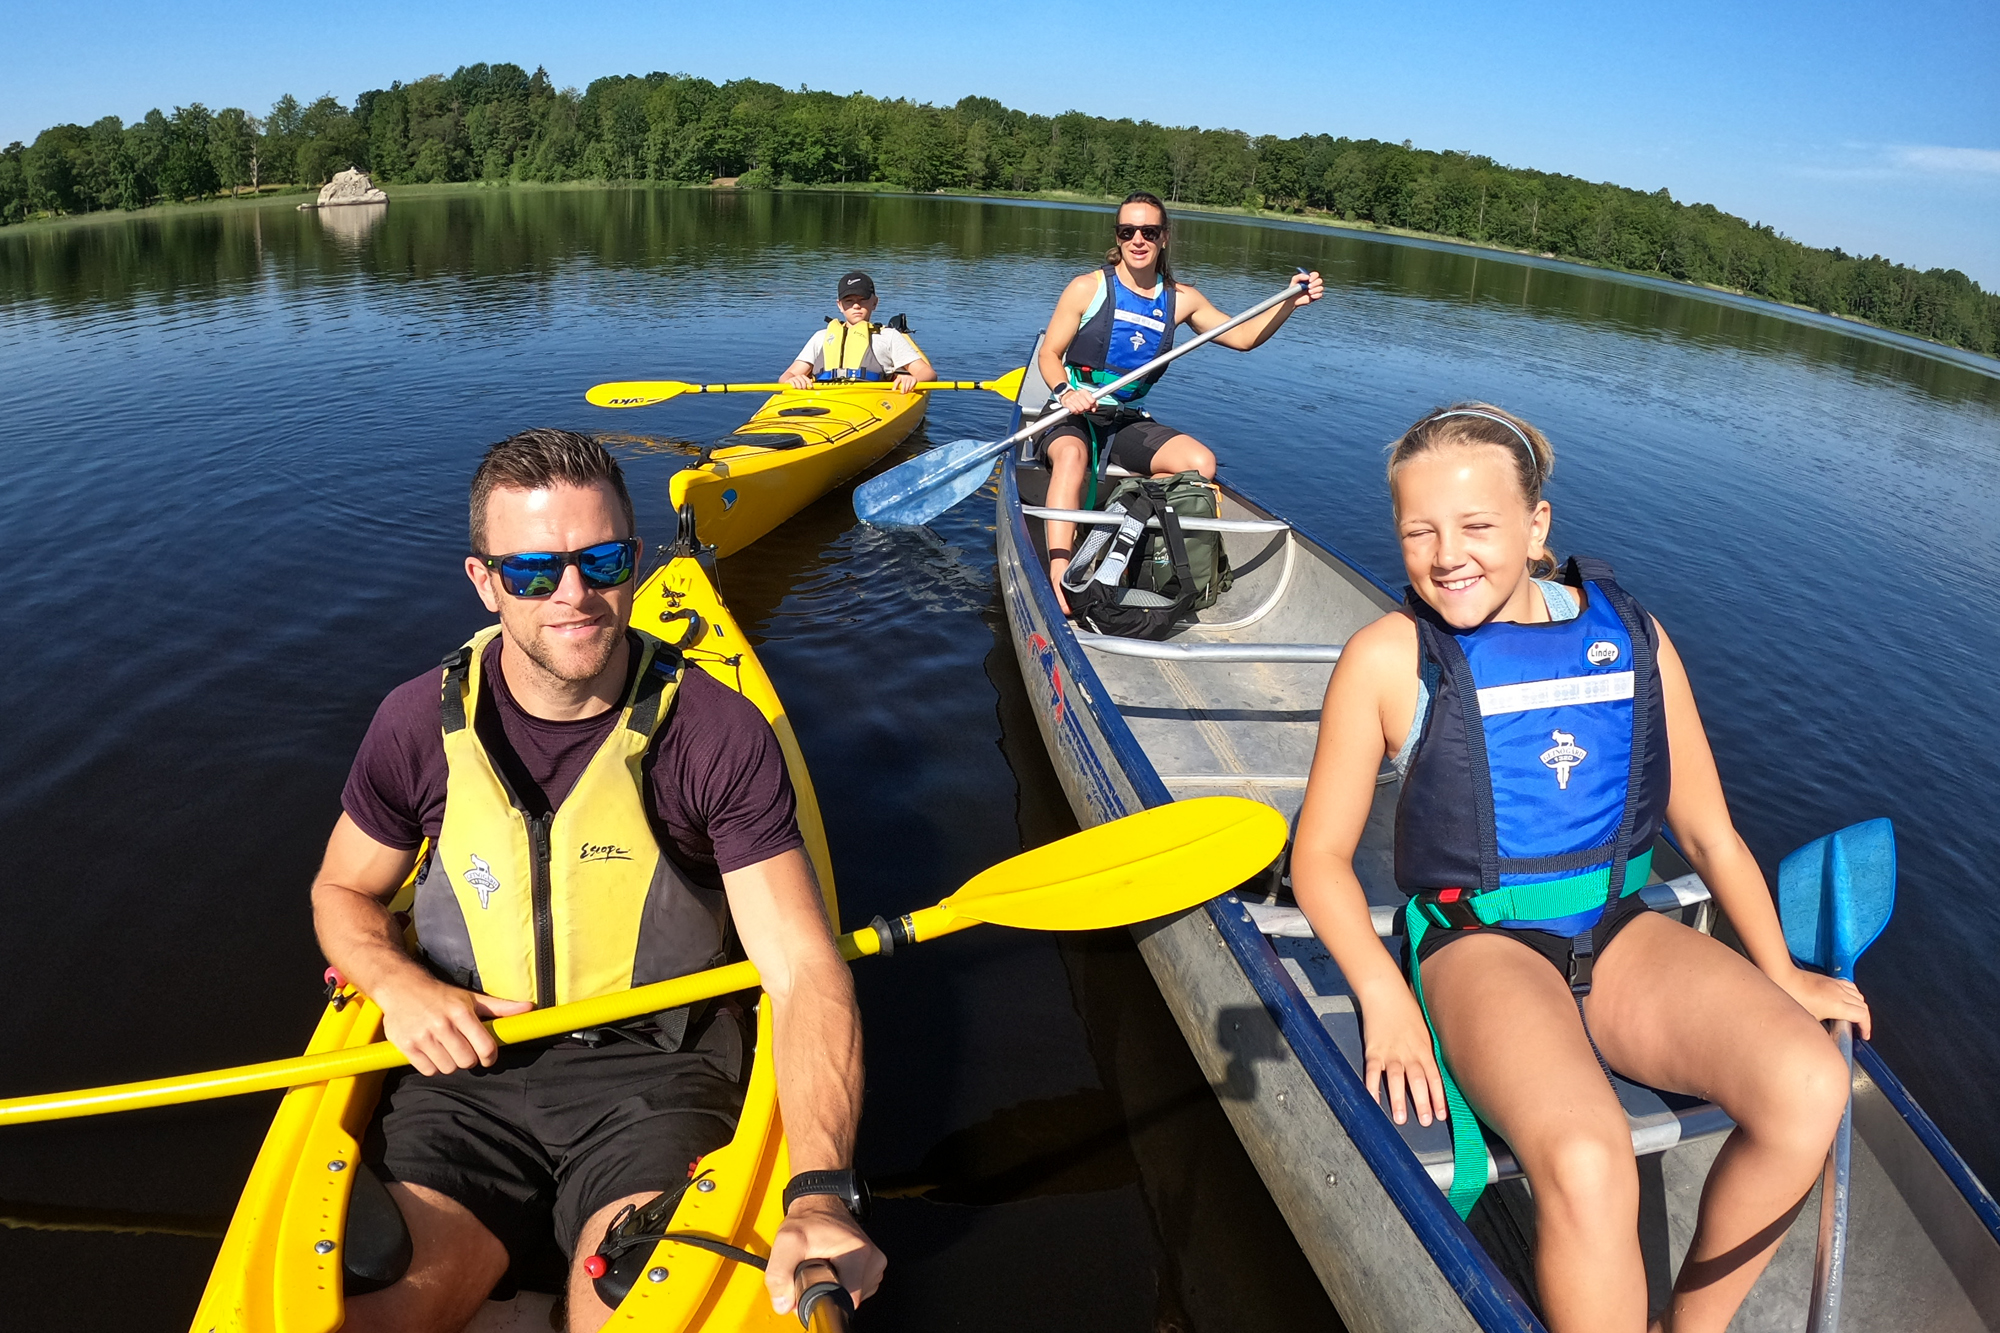 Team Lost med familj paddlar kajak på en småländsk sjö och tittar leende in i kameran med flytvästar på sig